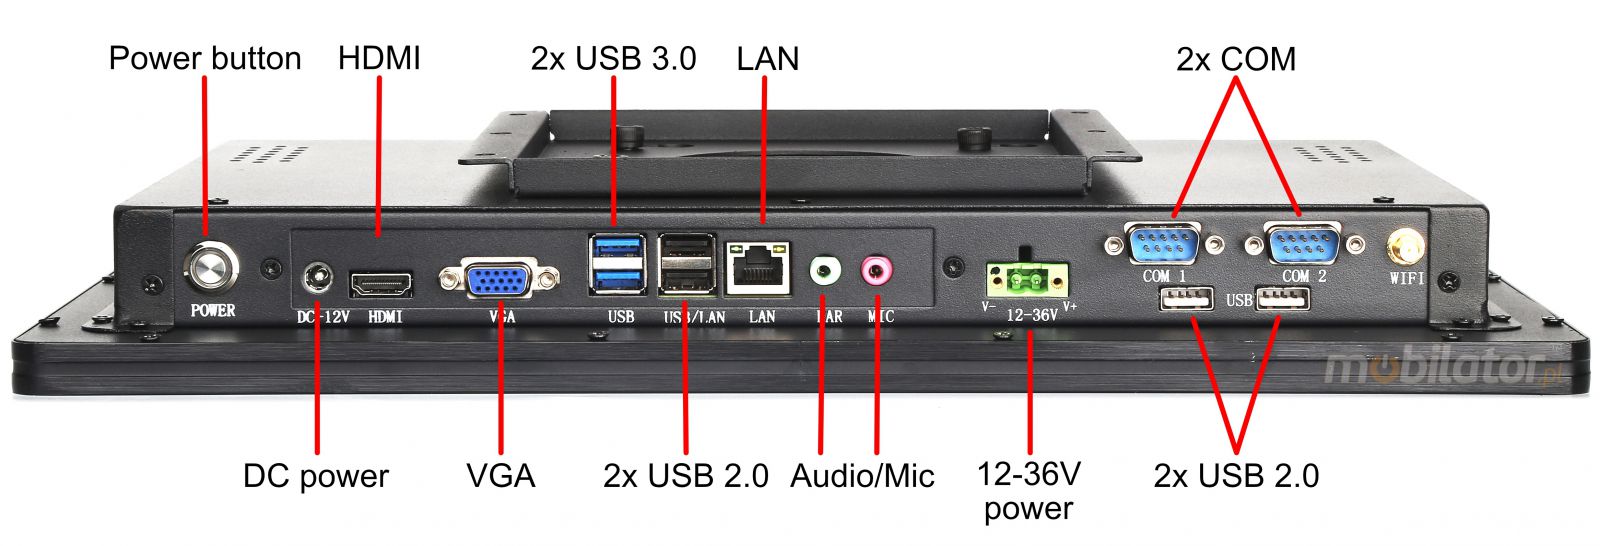 BiBOX-185PC1 (i5-4200U) v.8 - Pancerny panel przemysowy z norm odpornoci IP65 oraz WiFi, Windows 10 PRO z dyskiem 128GB SSD